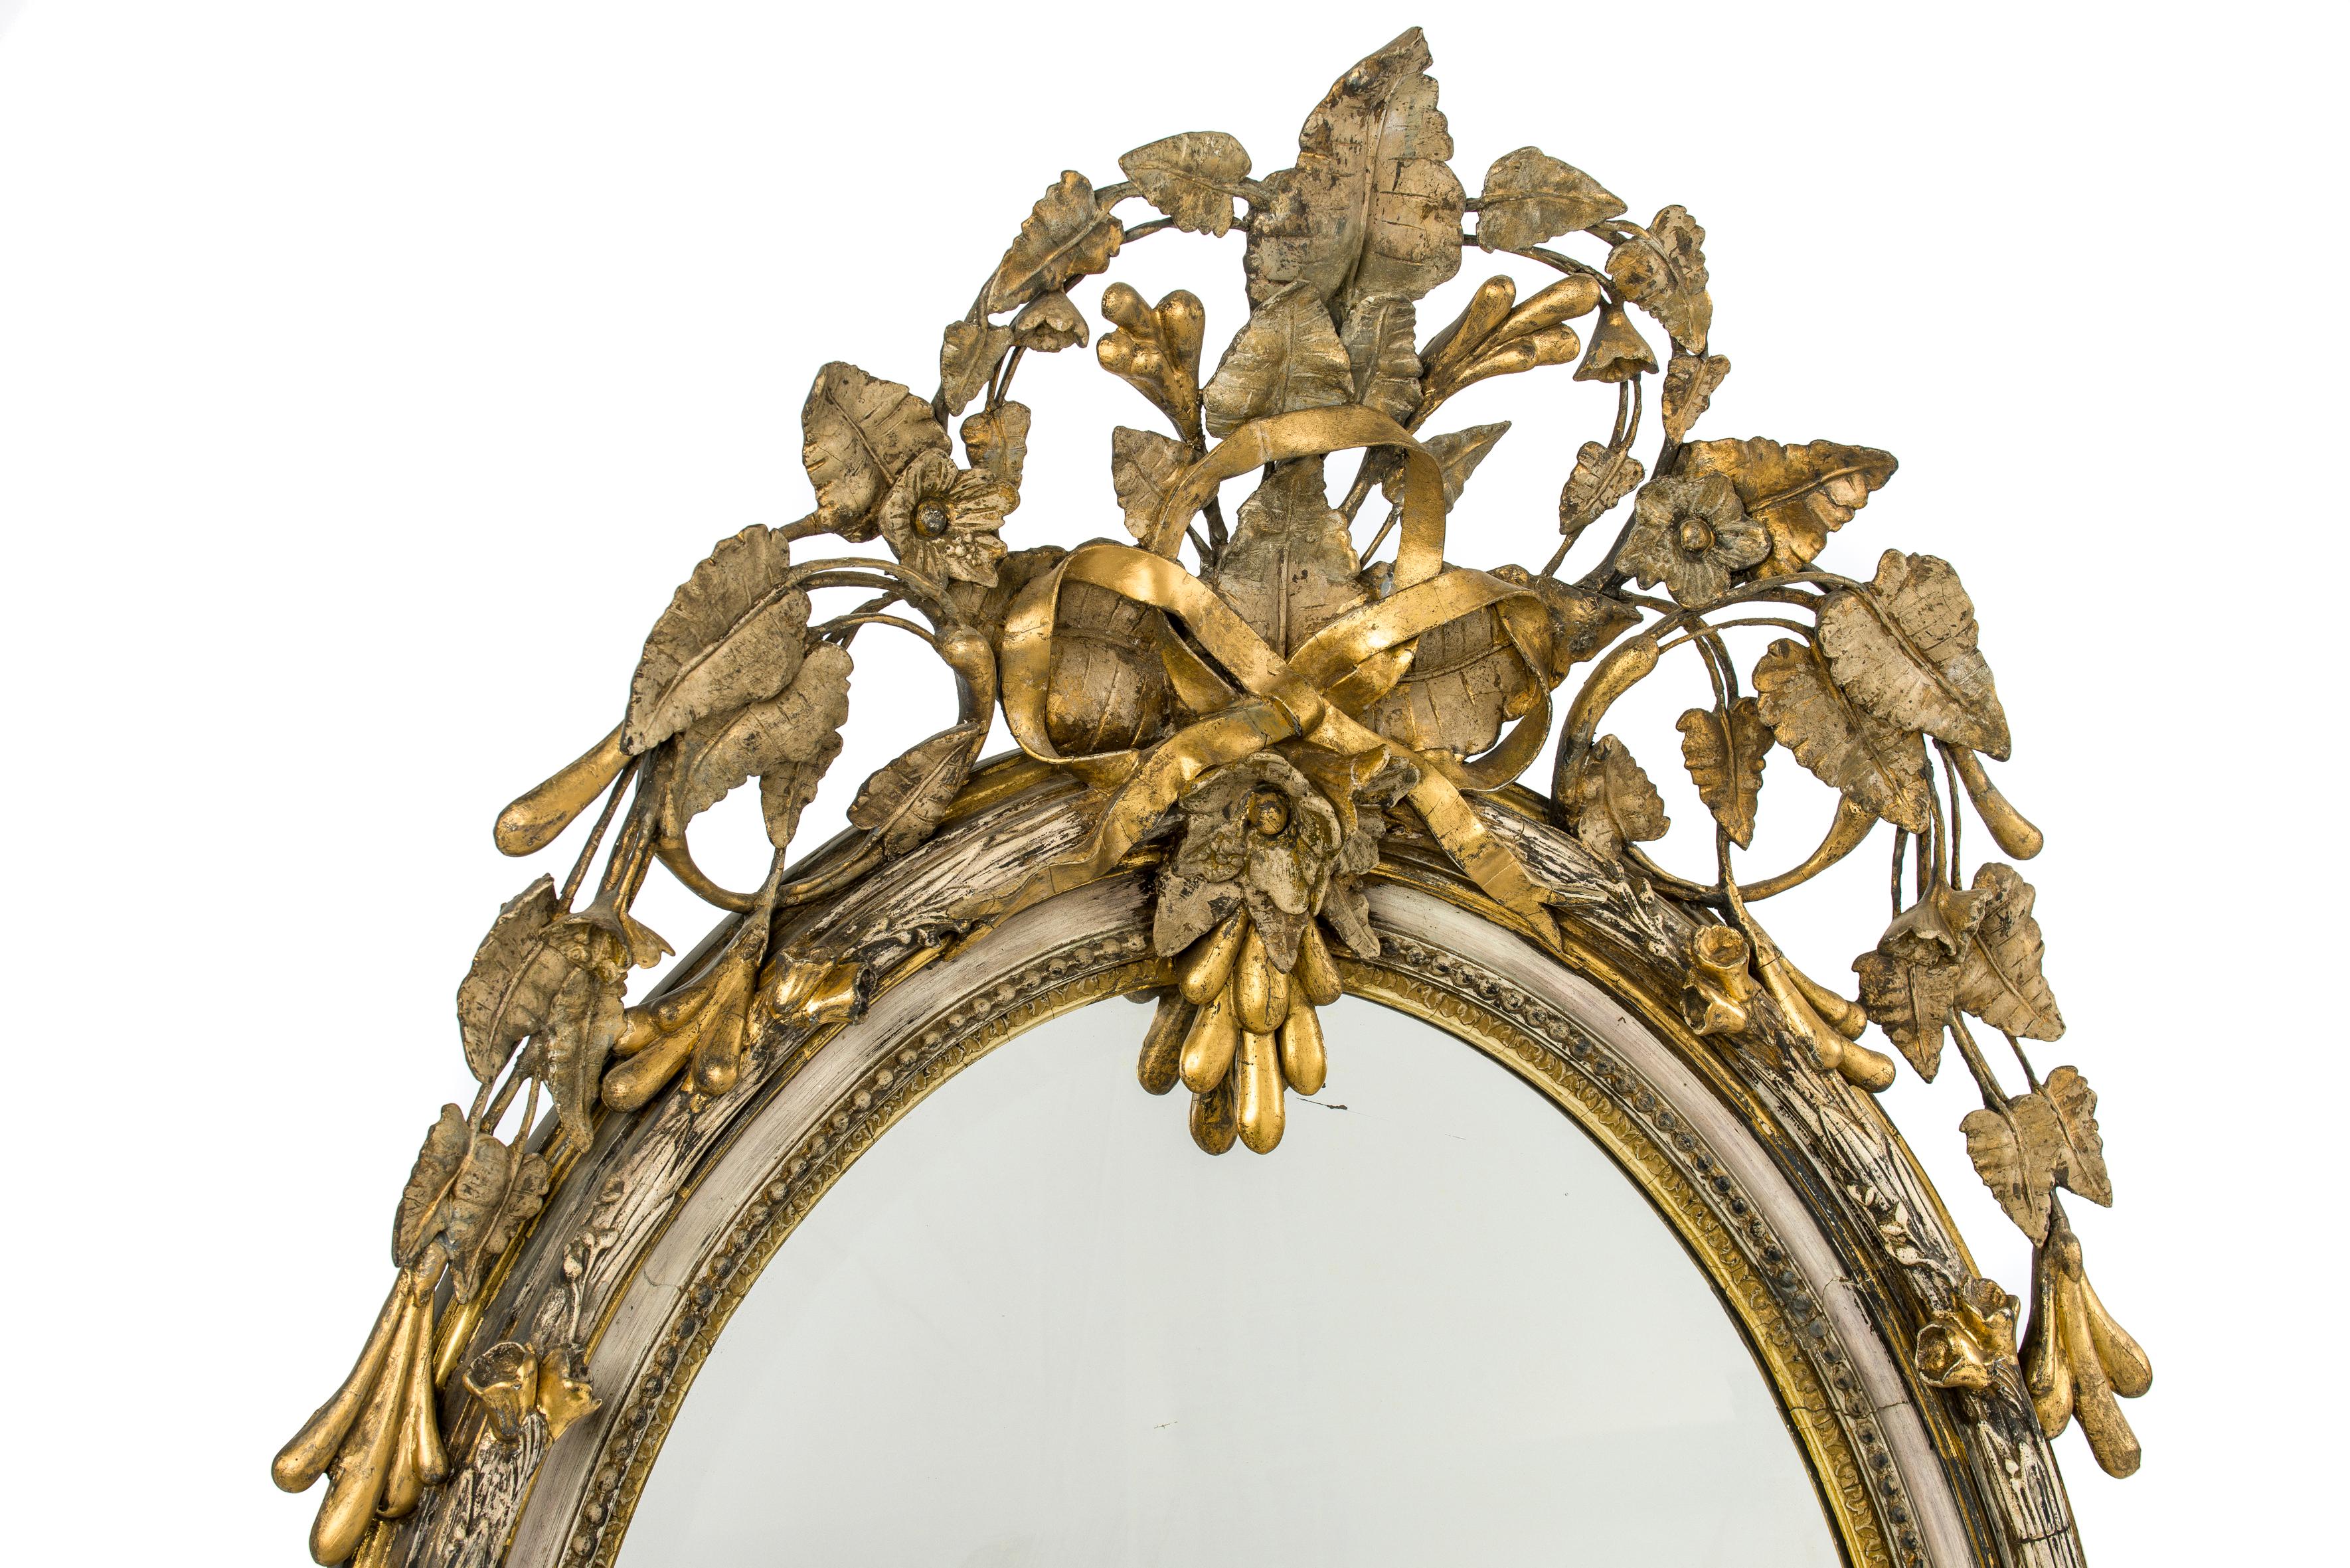 Ein schöner und von der Natur inspirierter antiker ovaler Spiegel, der um 1860 in Frankreich hergestellt wurde. 
Der am höchsten gelegene Teil des Rahmens hat die Form einer Rinde und ist mit Blumen und Blättern verziert. Der Rahmen ist mit einem